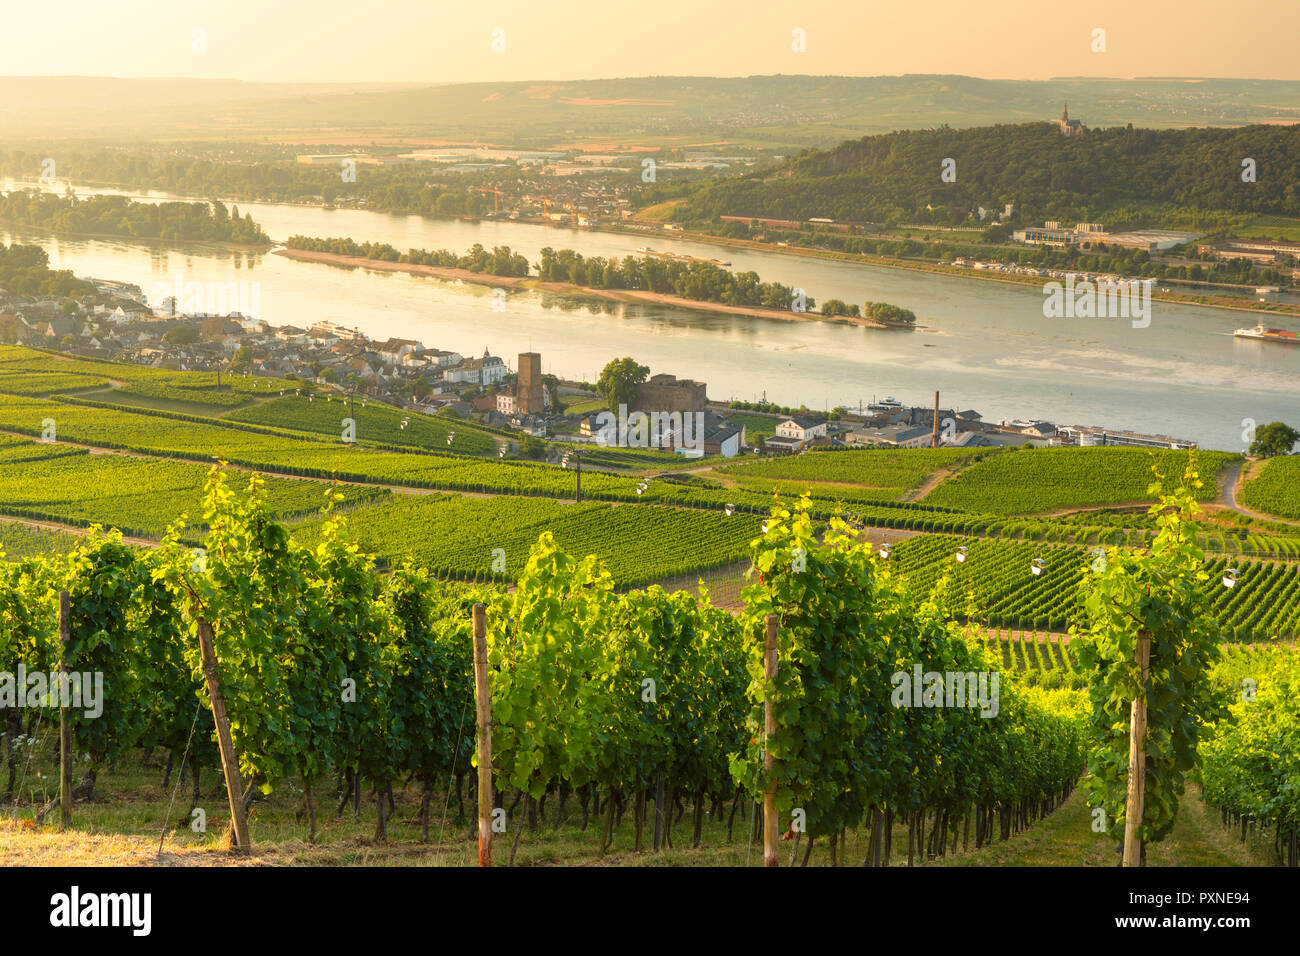 Vineyards and River Rhine, Rudesheim, Rhineland-Palatinate, Germany Stock Photo